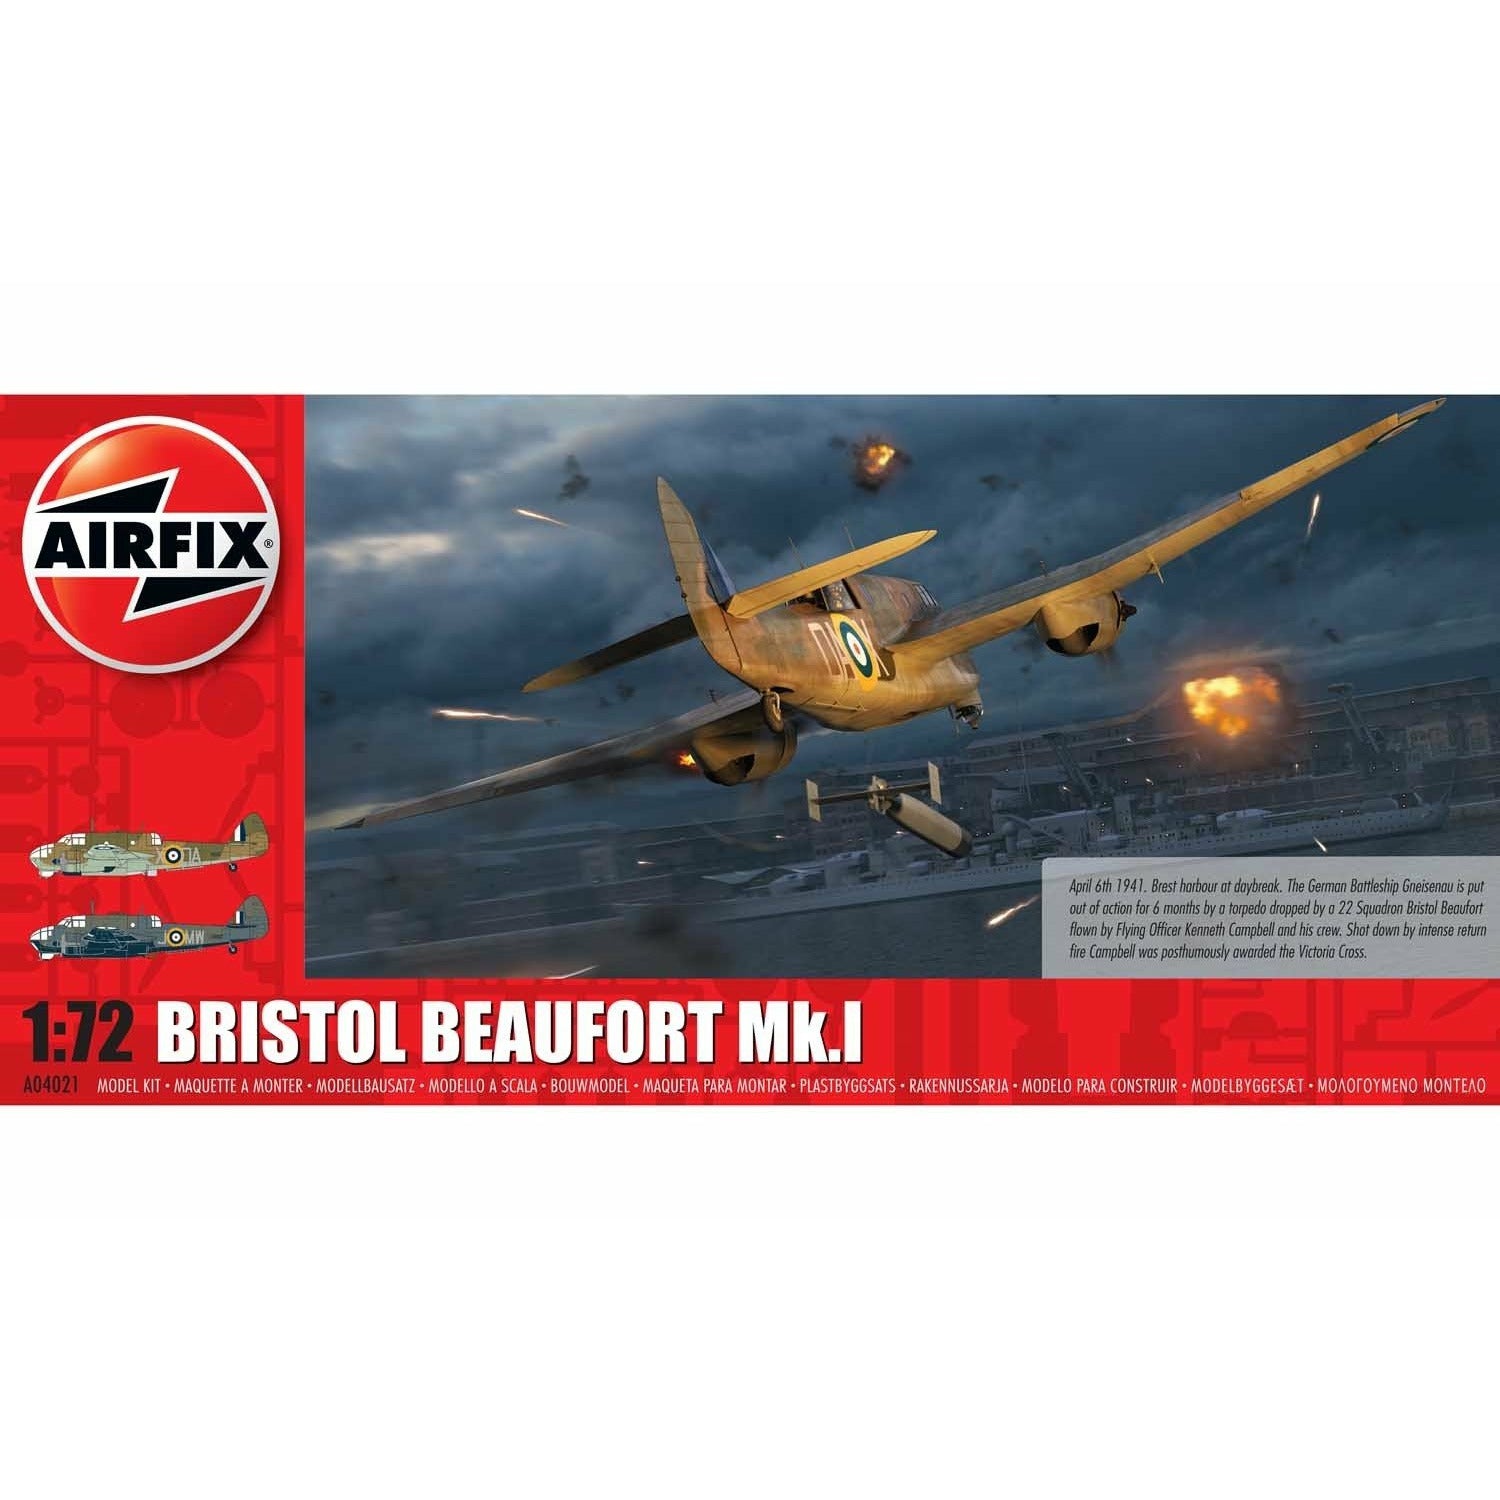 Bristol Beaufort M.K. I 1/72 #04021 by Airfix